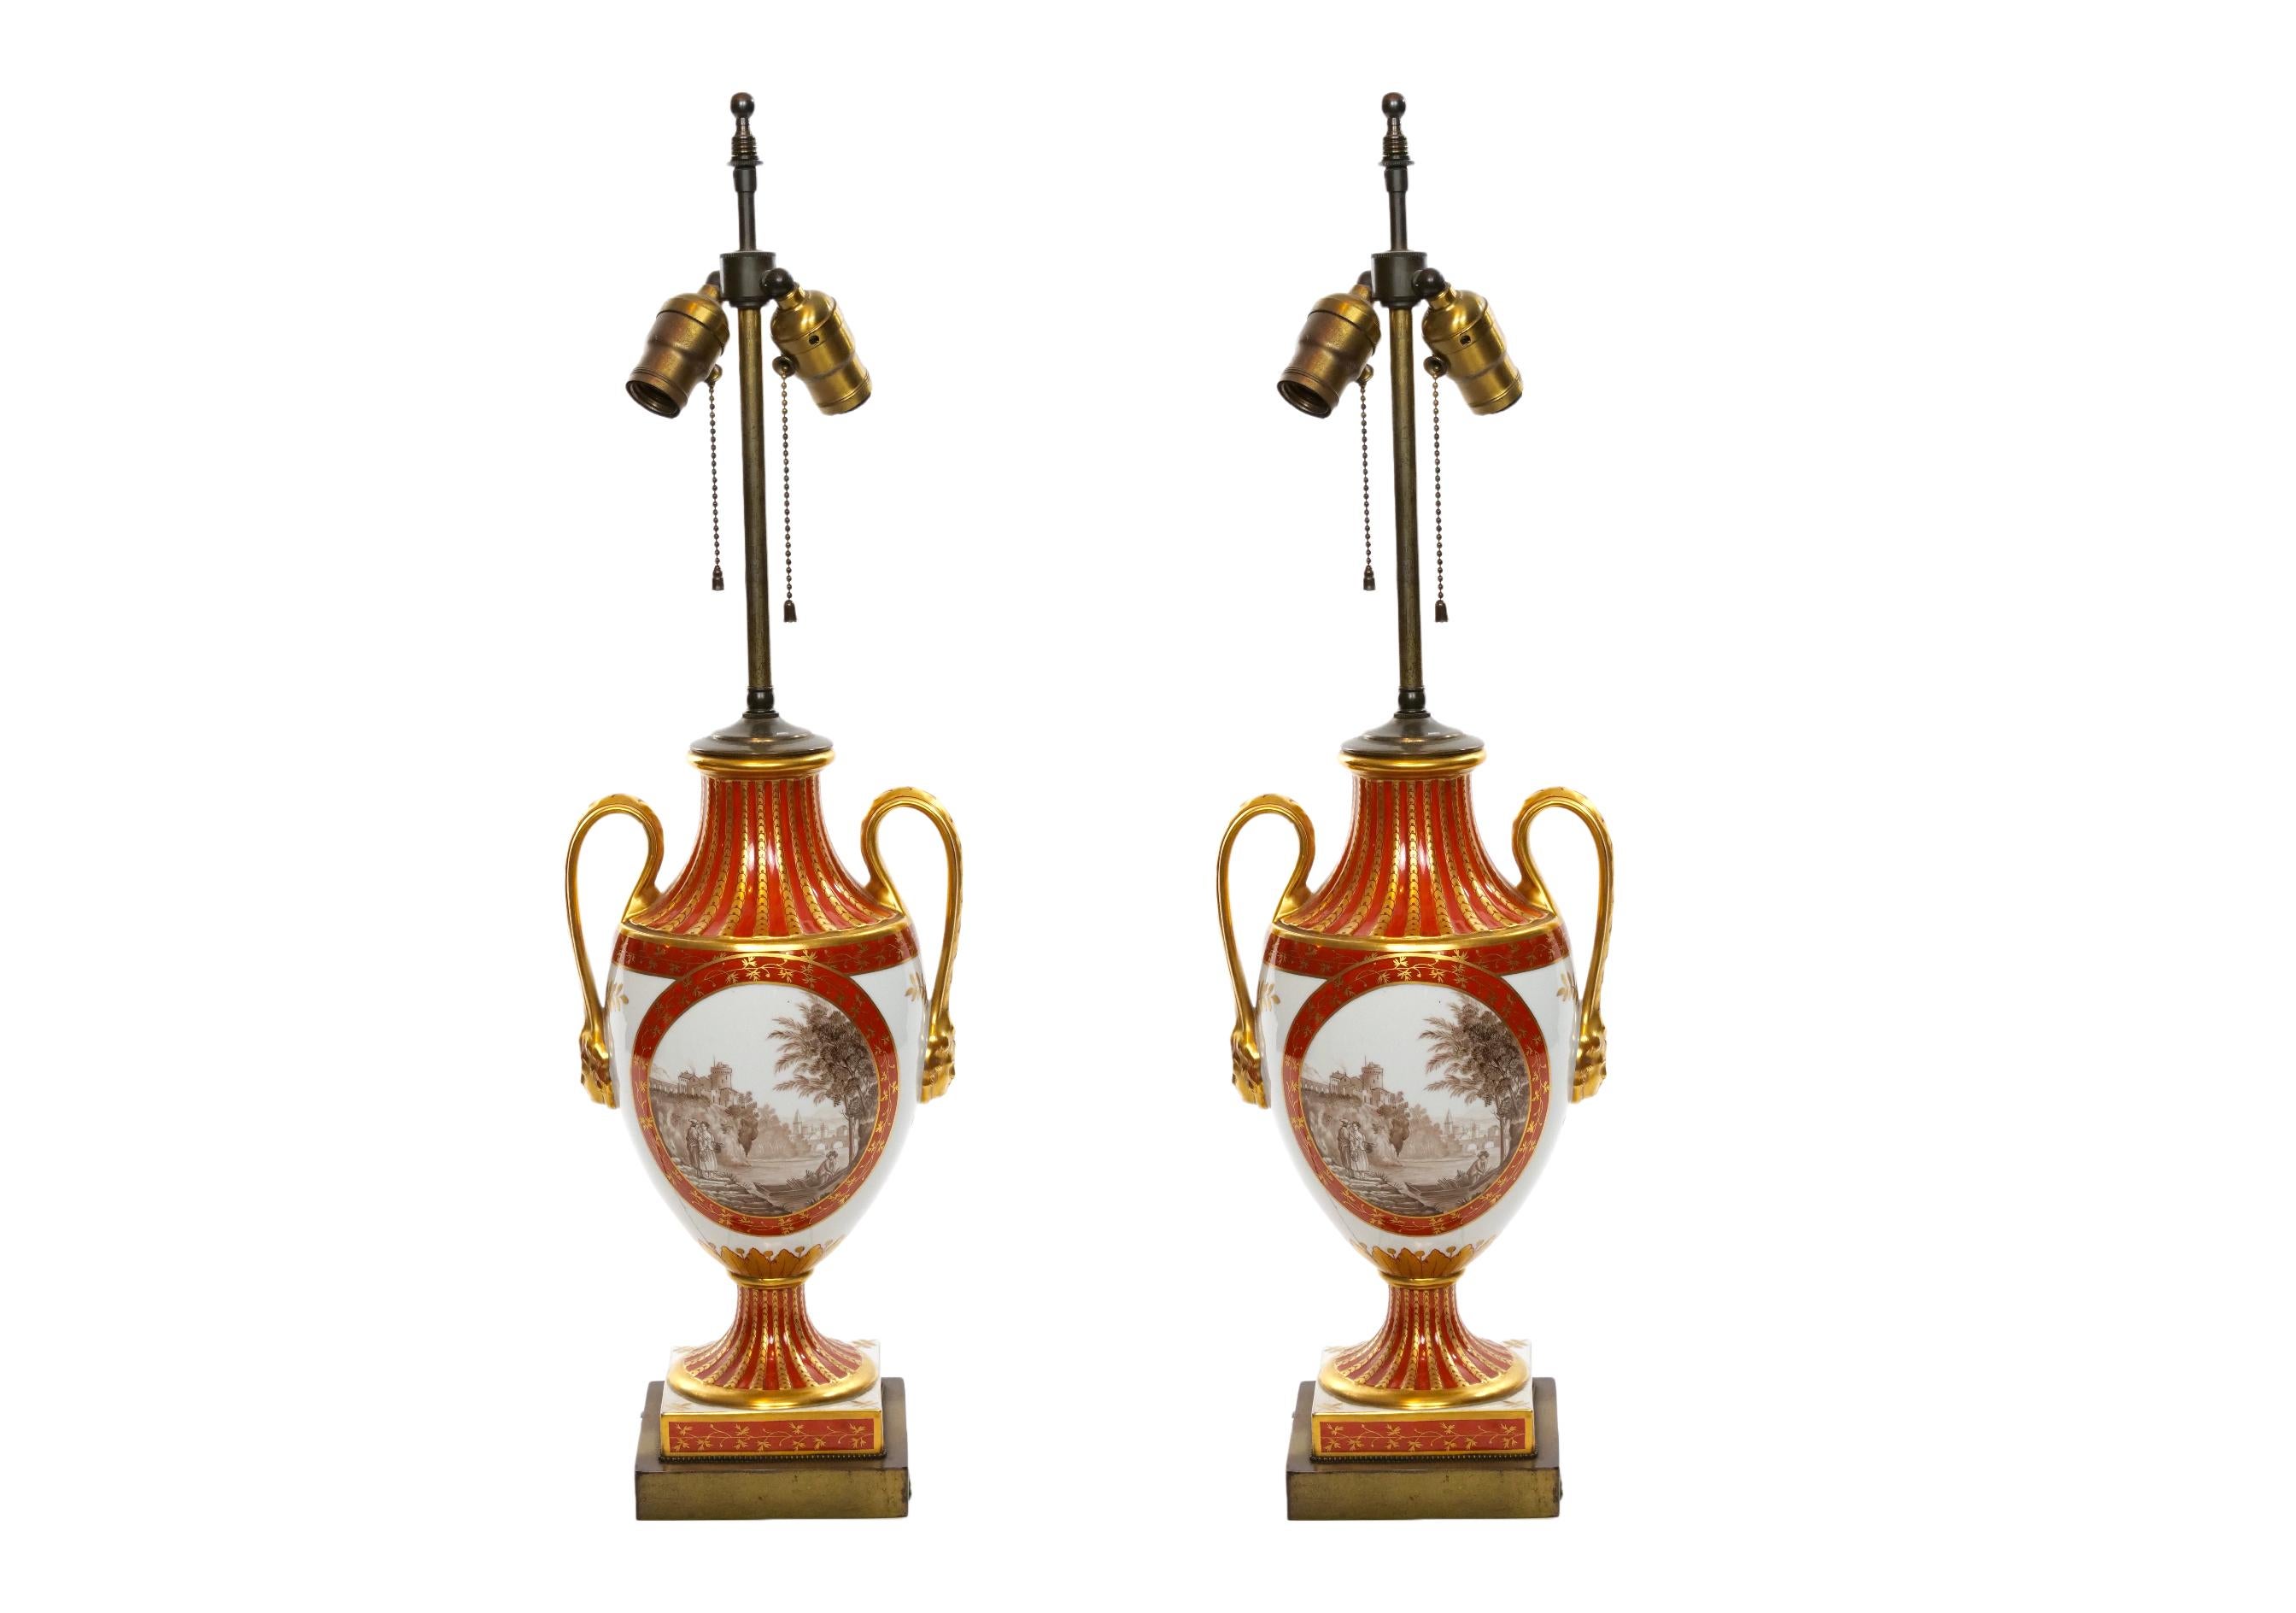 Louis XVI-Stil Französisch Porzellan und vergoldet Gold dore dekorative Vase Paar Tischlampe. Jede Lampe zeigt auf einer Seite eine gemalte pastorale Promenadenszene, die von einem berühmten Künstler des 19. Jahrhunderts signiert wurde. Die